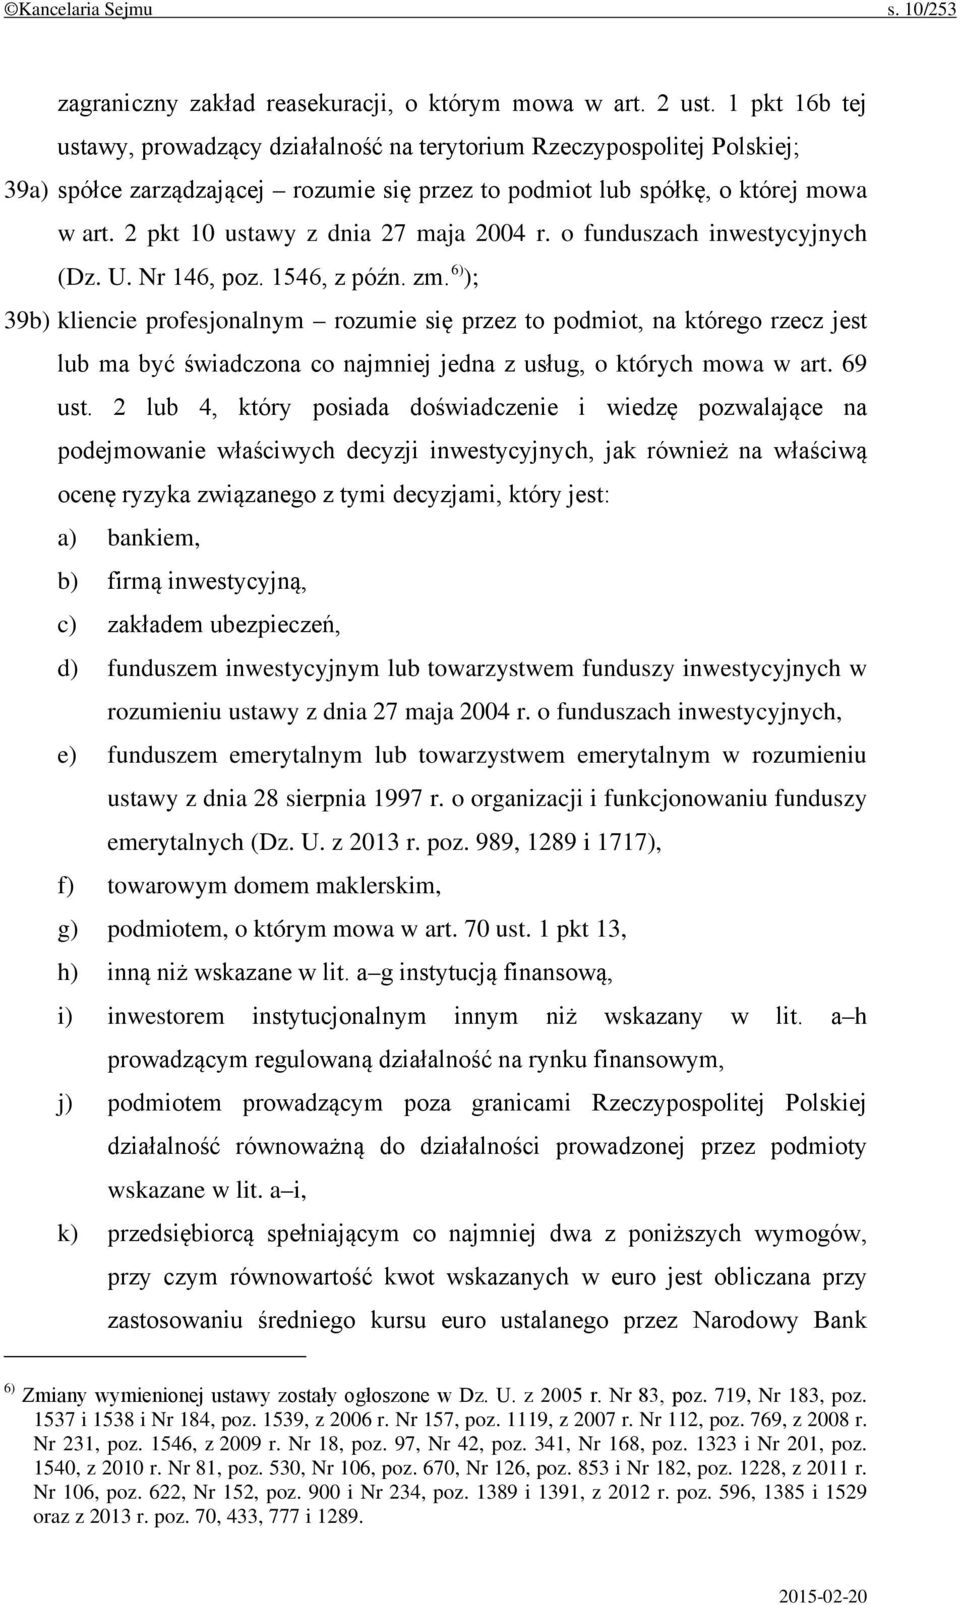 2 pkt 10 ustawy z dnia 27 maja 2004 r. o funduszach inwestycyjnych (Dz. U. Nr 146, poz. 1546, z późn. zm.